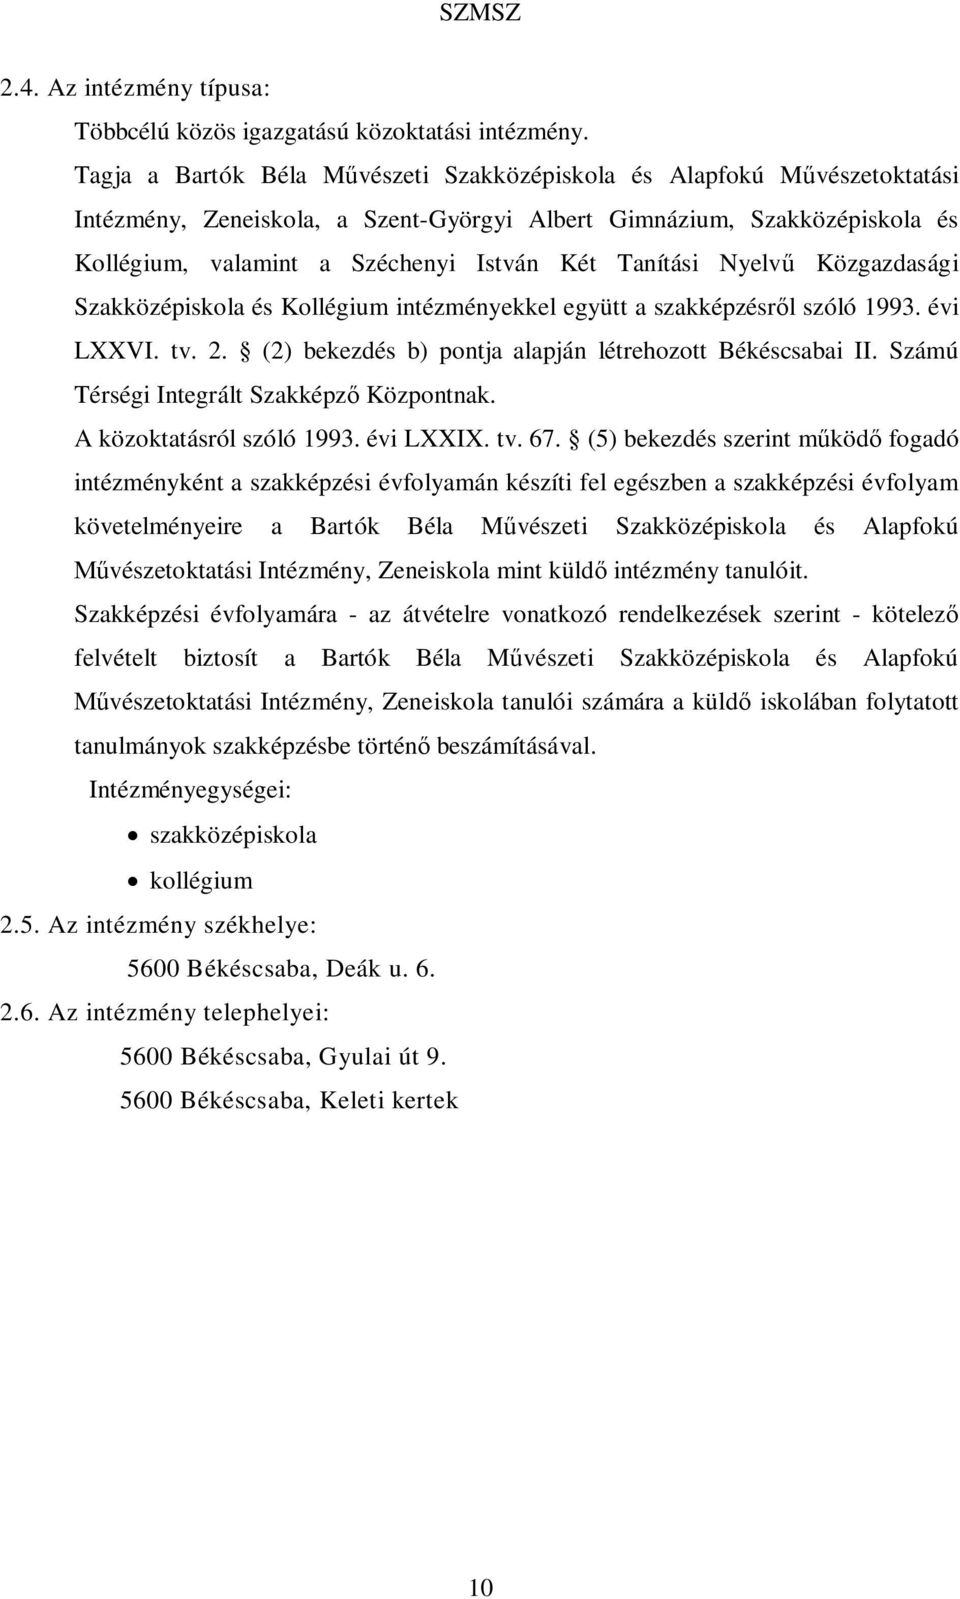 Tanítási Nyelvű Közgazdasági Szakközépiskola és Kollégium intézményekkel együtt a szakképzésről szóló 1993. évi LXXVI. tv. 2. (2) bekezdés b) pontja alapján létrehozott Békéscsabai II.